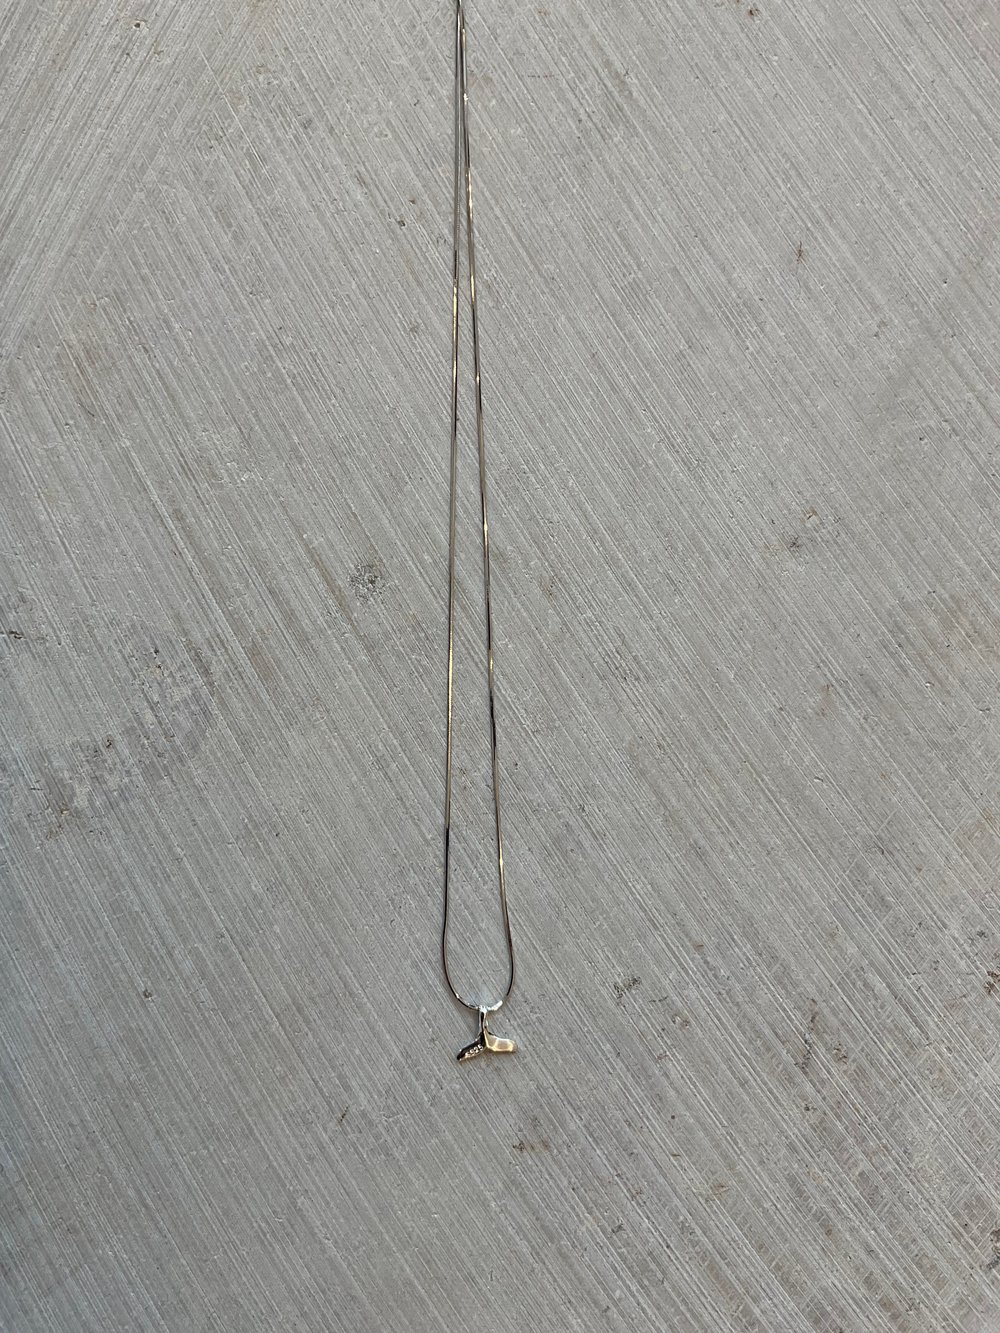 Silver 925 Marmaid necklace 